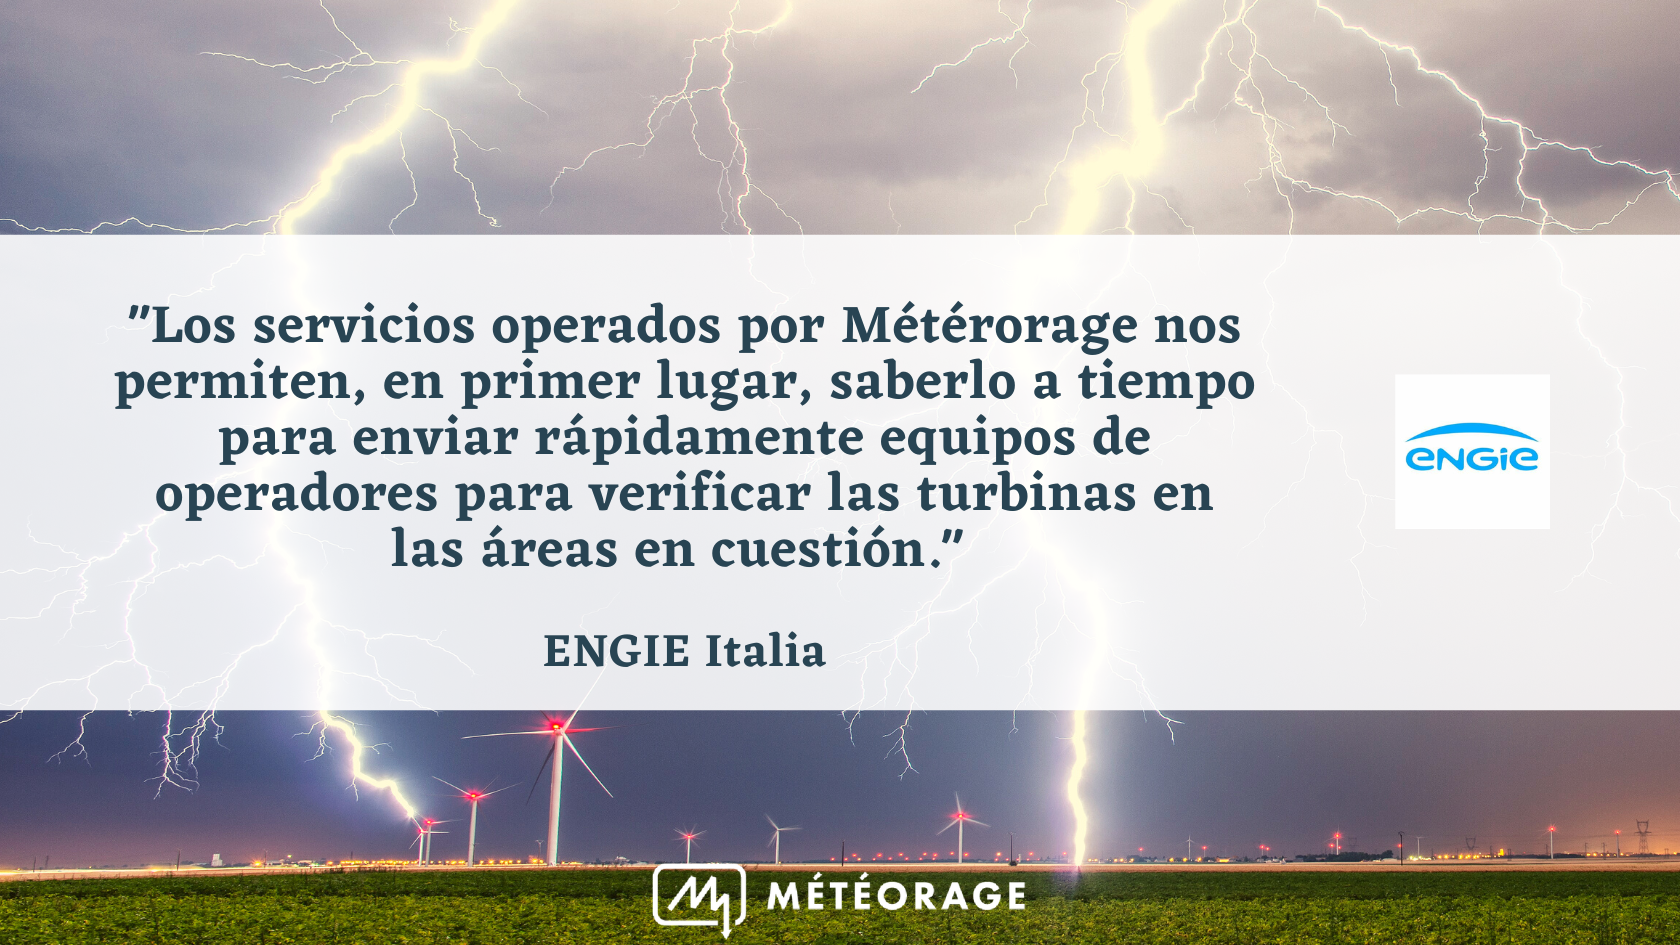 "Los servicios operados por Métérorage nos permiten, en primer lugar, saberlo a tiempo para enviar rápidamente equipos de operadores para verificar las turbinas en las áreas en cuestión." ENGIE Italia